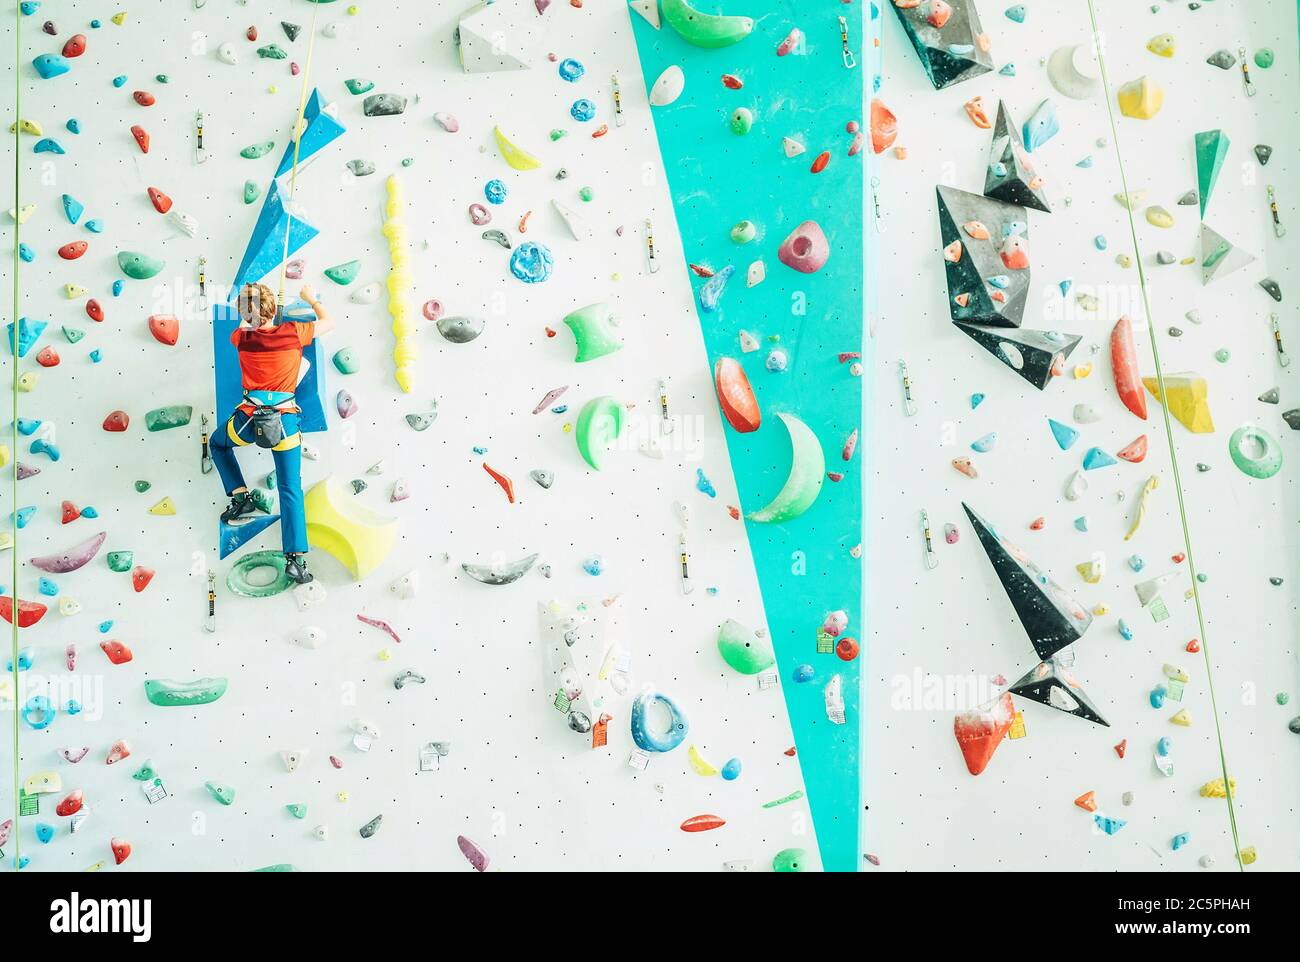 Teenager Junge in Indoor Kletterwand Halle. Boy klettert mit einem Auto-Sicherungssystem und Klettergurt. Aktive Teenager Zeit verbringen Konzept imag Stockfoto